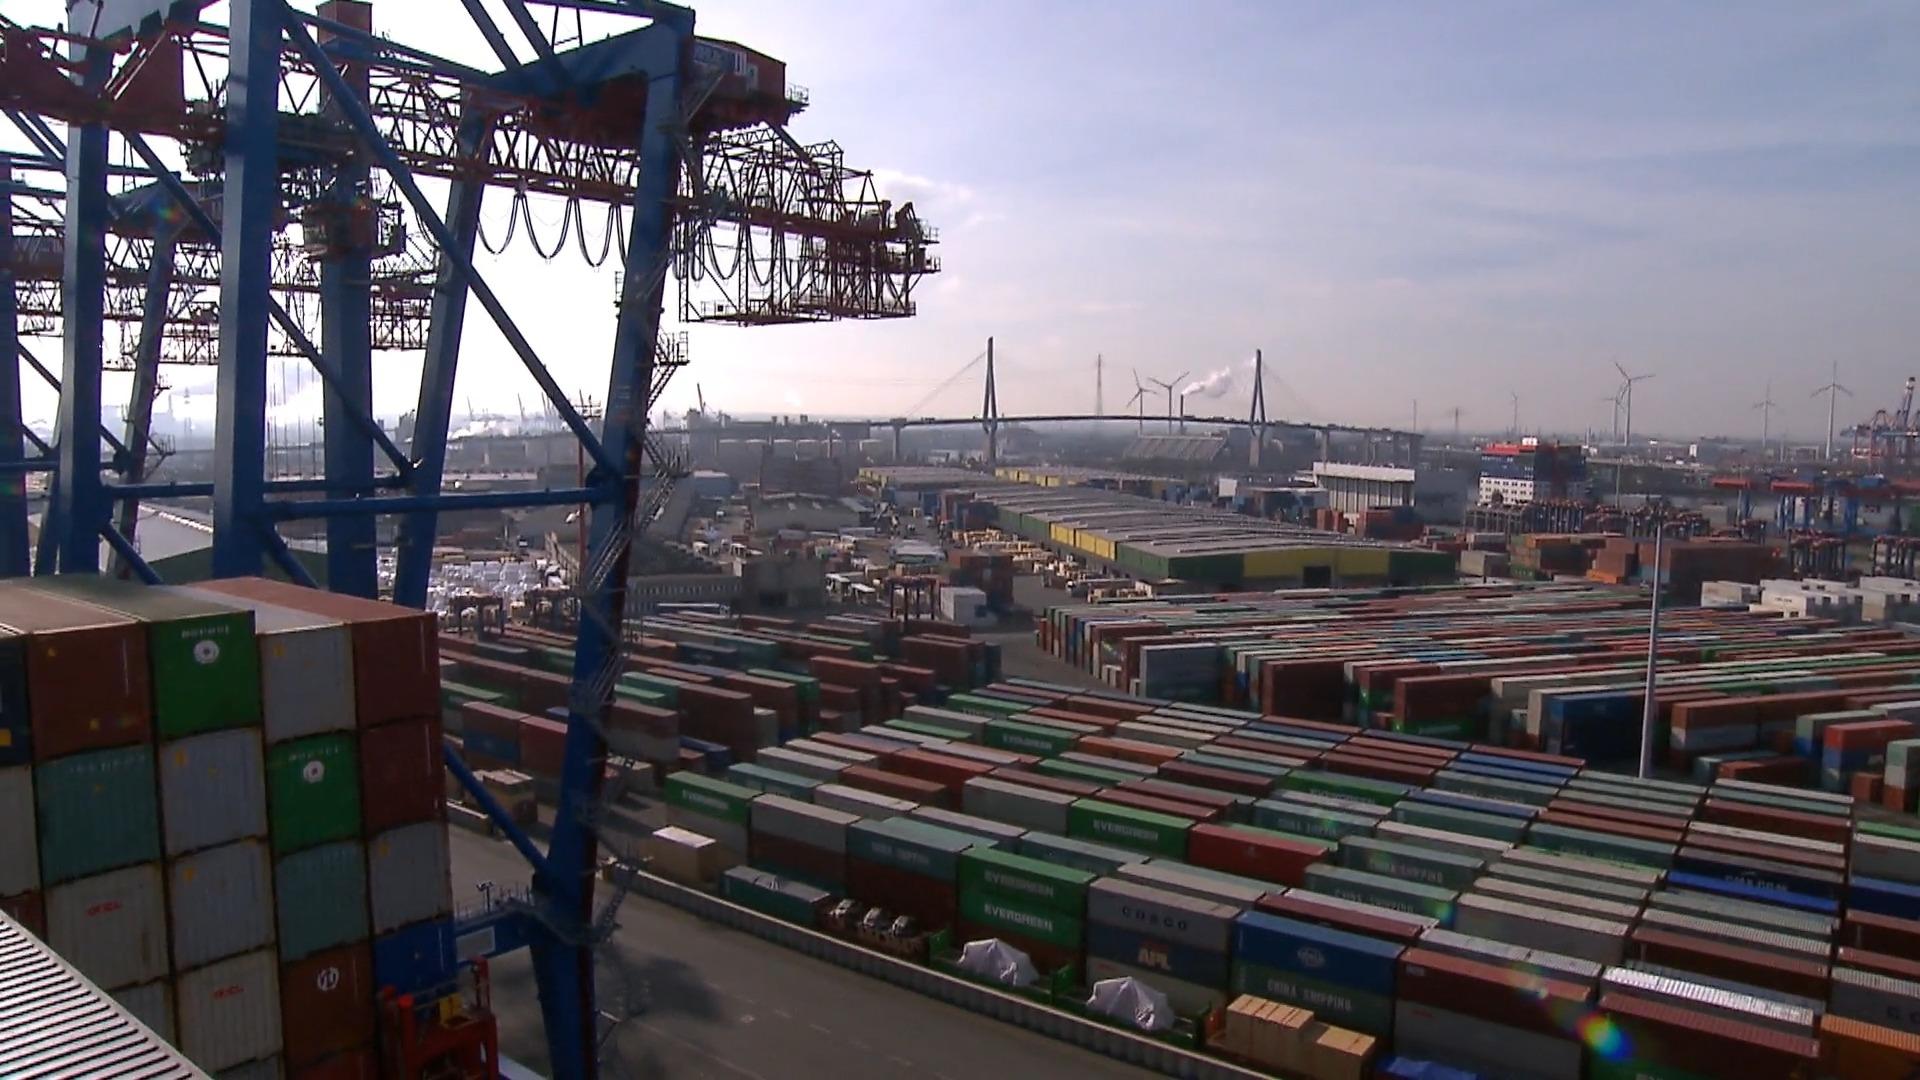 Enorme disputa sobre la venta del puerto de Hamburgo al canciller chino Schultz quiere seguir adelante con el trato